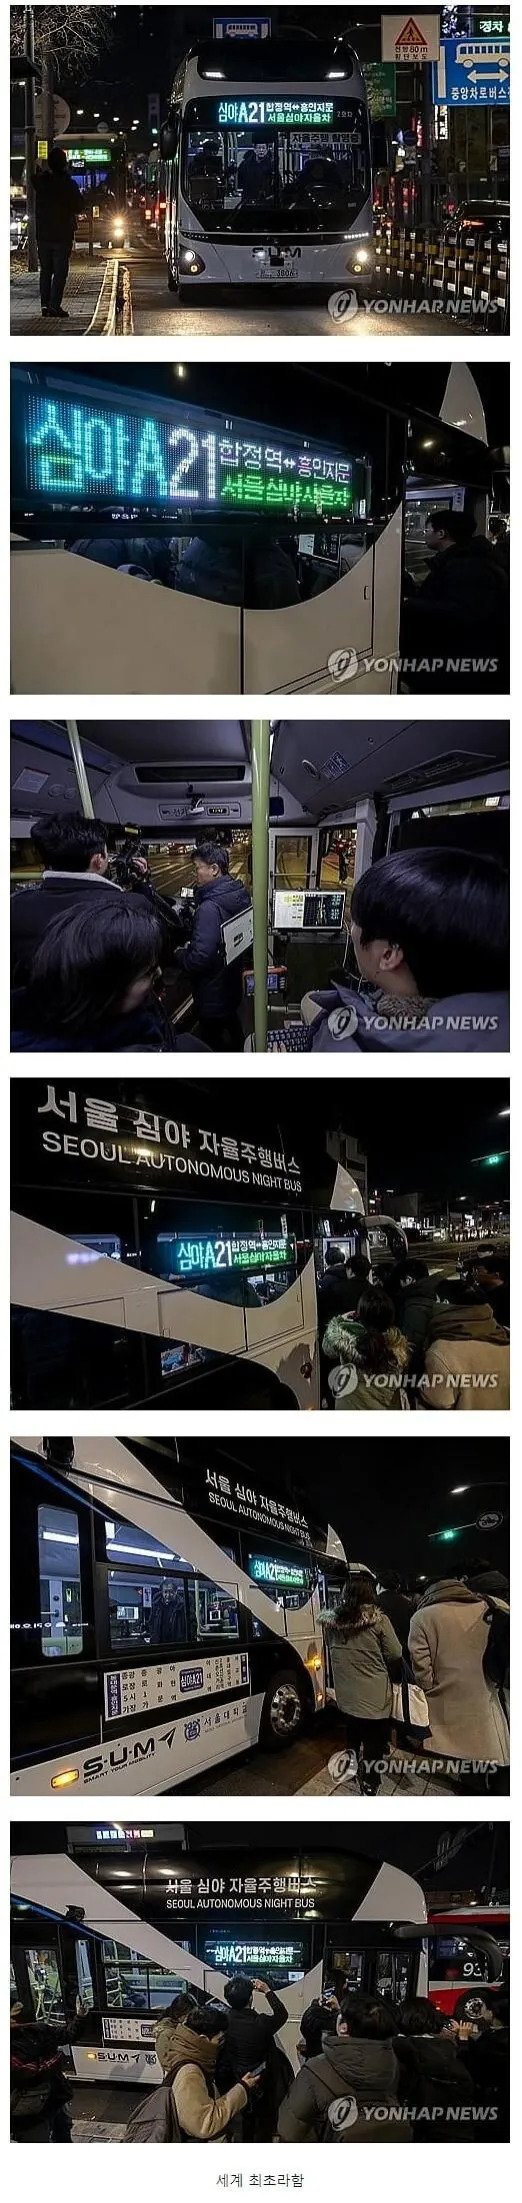 새벽에 세계 최초로 서울에서 자율운행 버스가 성공적으로 운행되었습니다